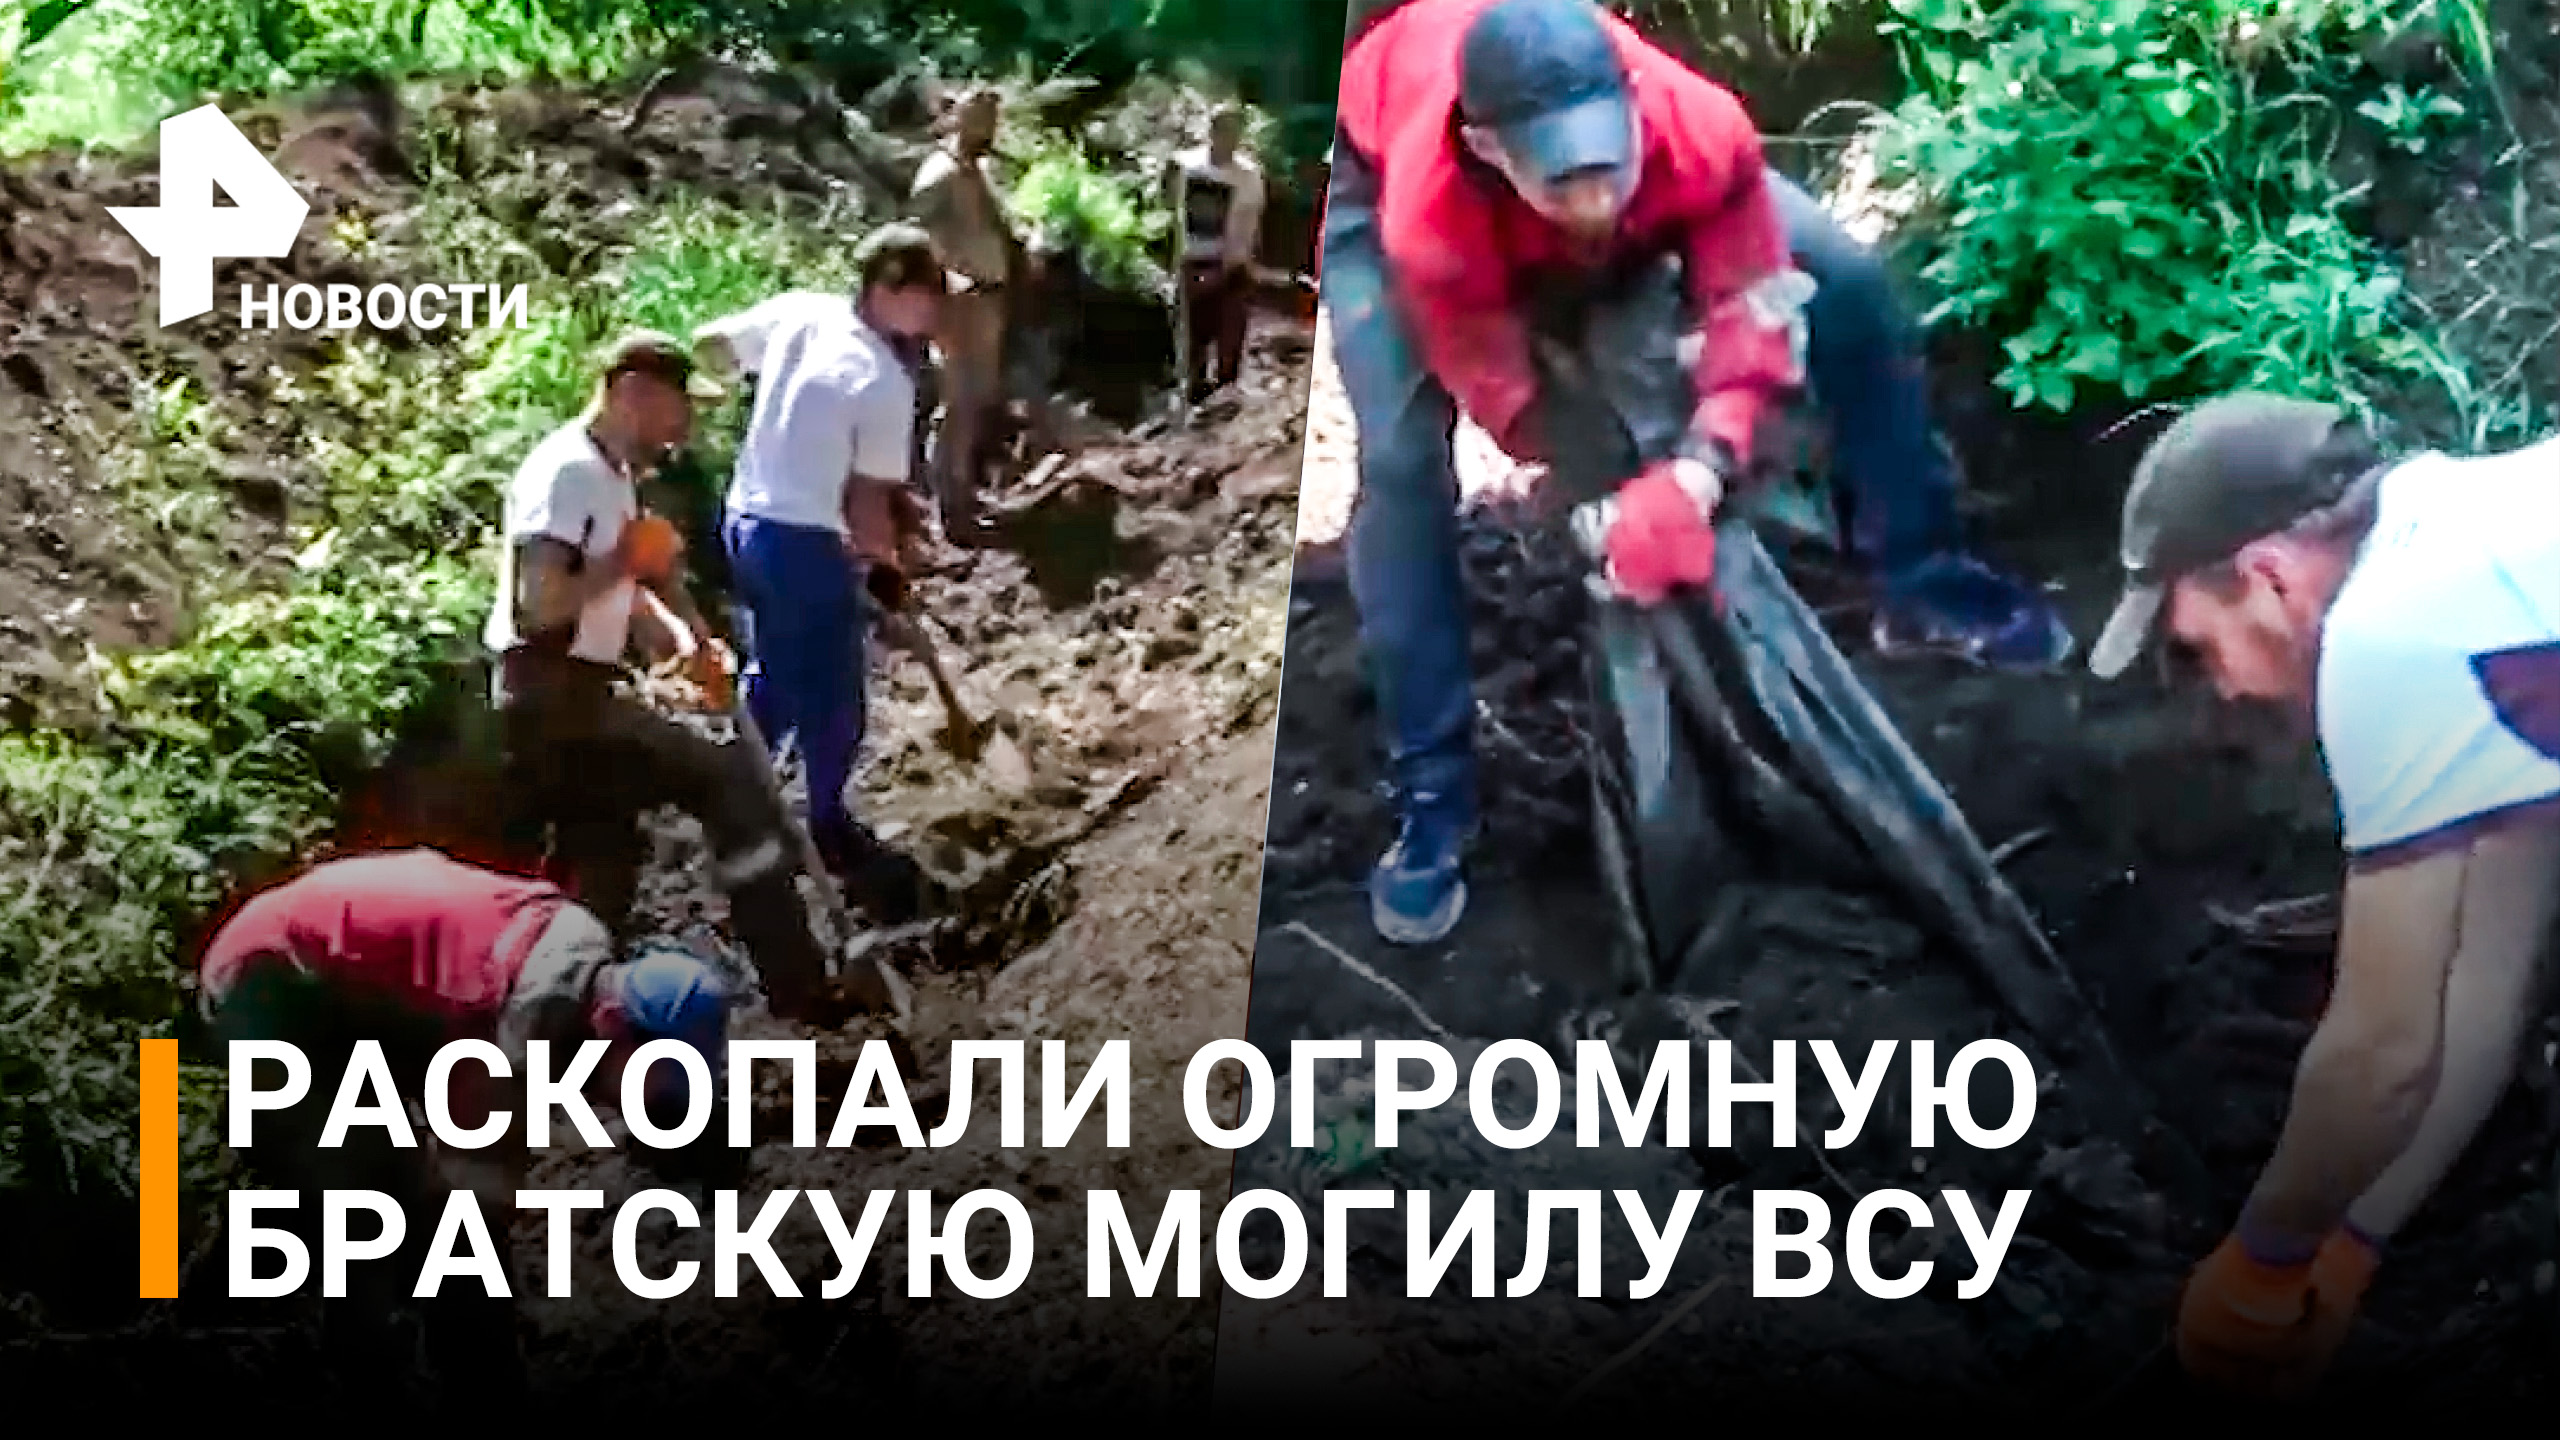 Огромную братскую могилу с телами украинских военных обнаружили в Мариуполе / РЕН Новости